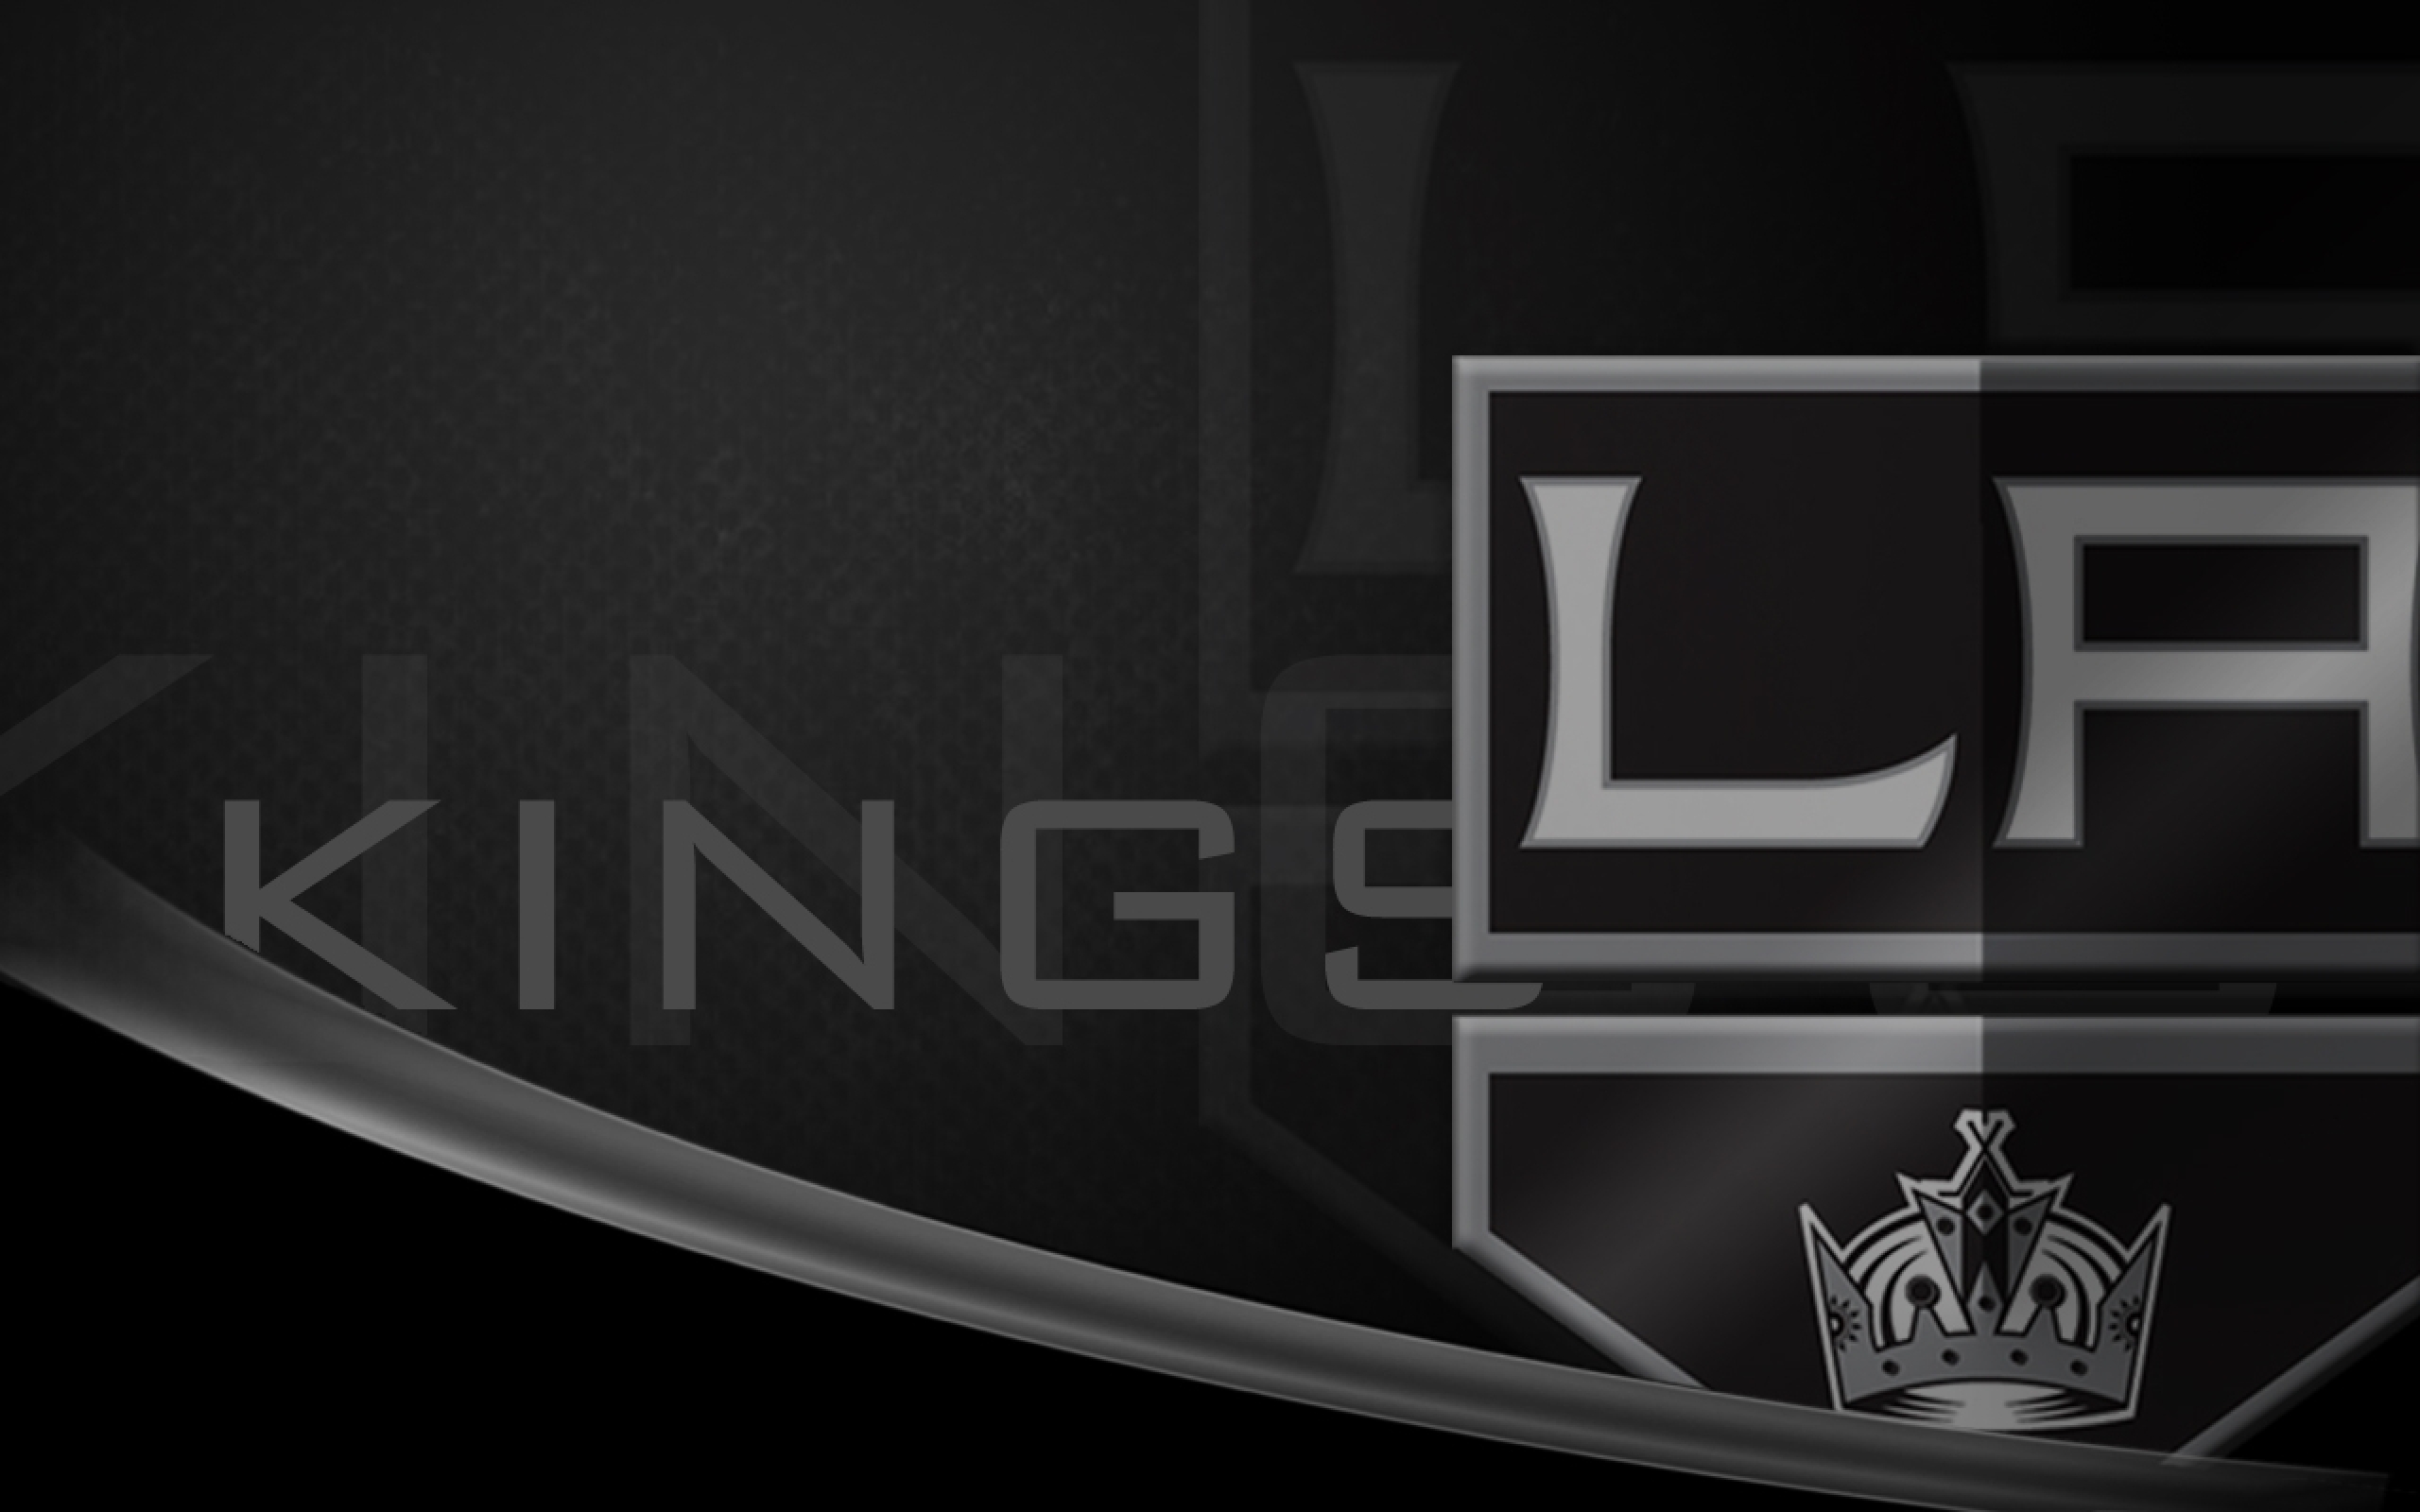 Los Angeles Kings 003 NHL, Hokej, Logo